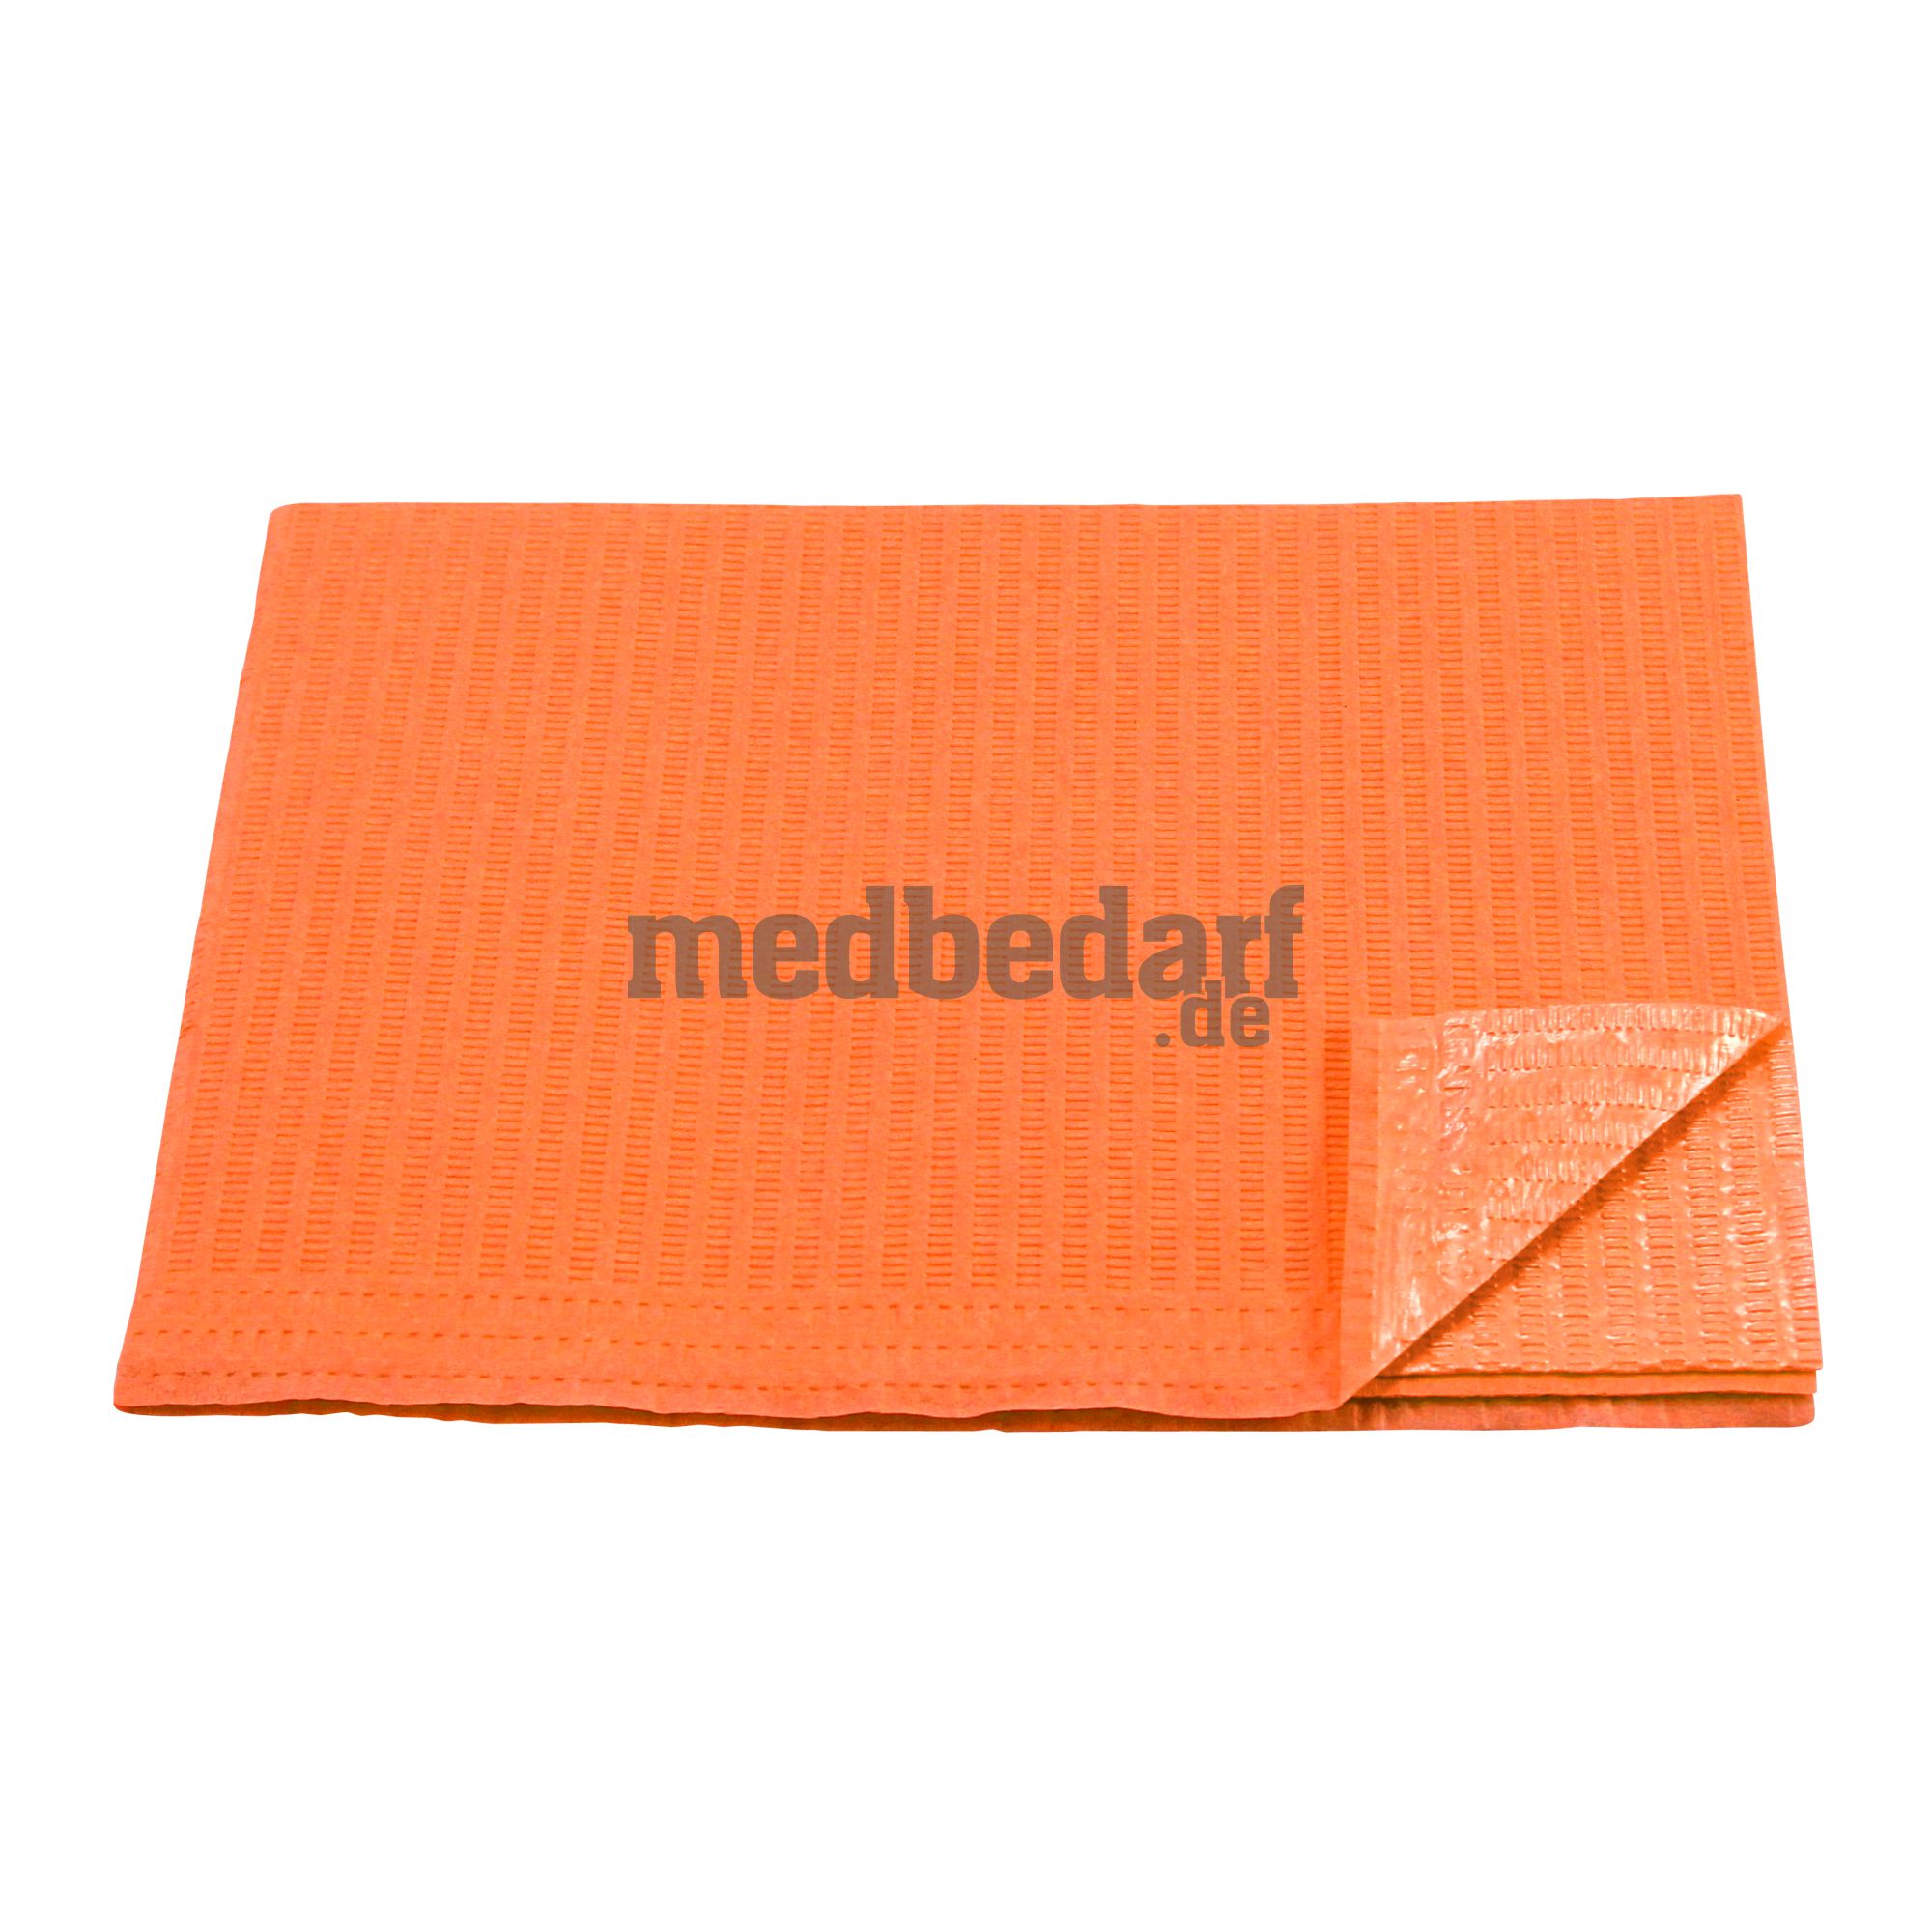 Patientenservietten, Tissue/PE, orange, 500 Stück